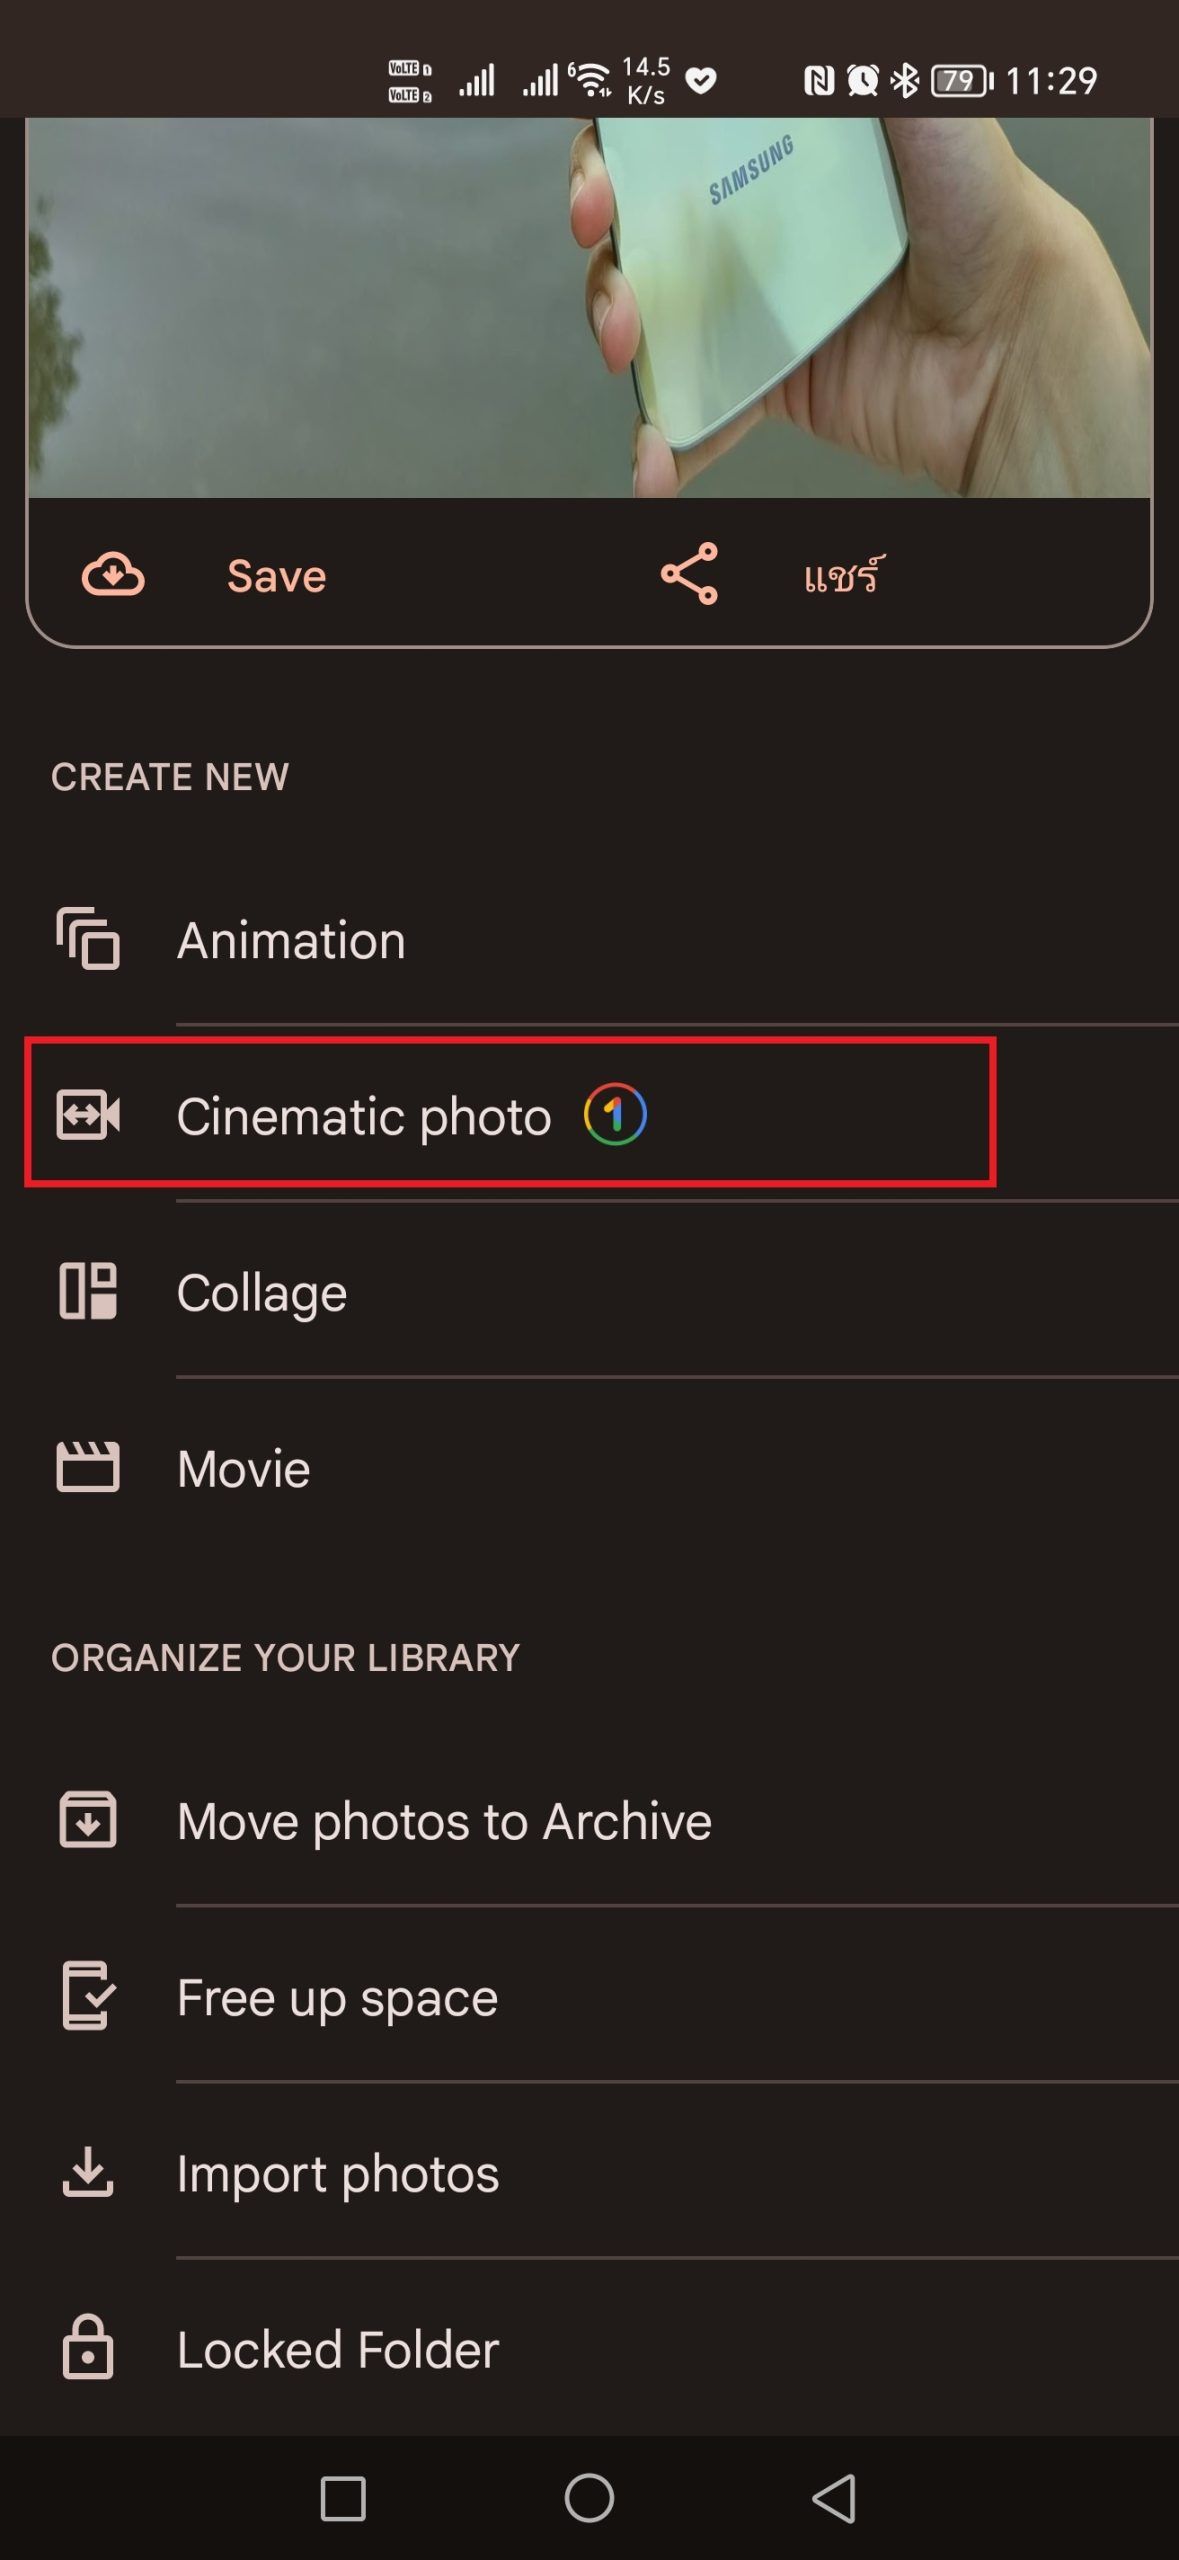 ของเล่นใหม่…Google Photos เปิดฟีเจอร์ Cinematic photo เปลี่ยนภาพถ่ายเป็นภาพเคลื่อนไหว 3 มิติ ให้ใช้ได้แล้ว